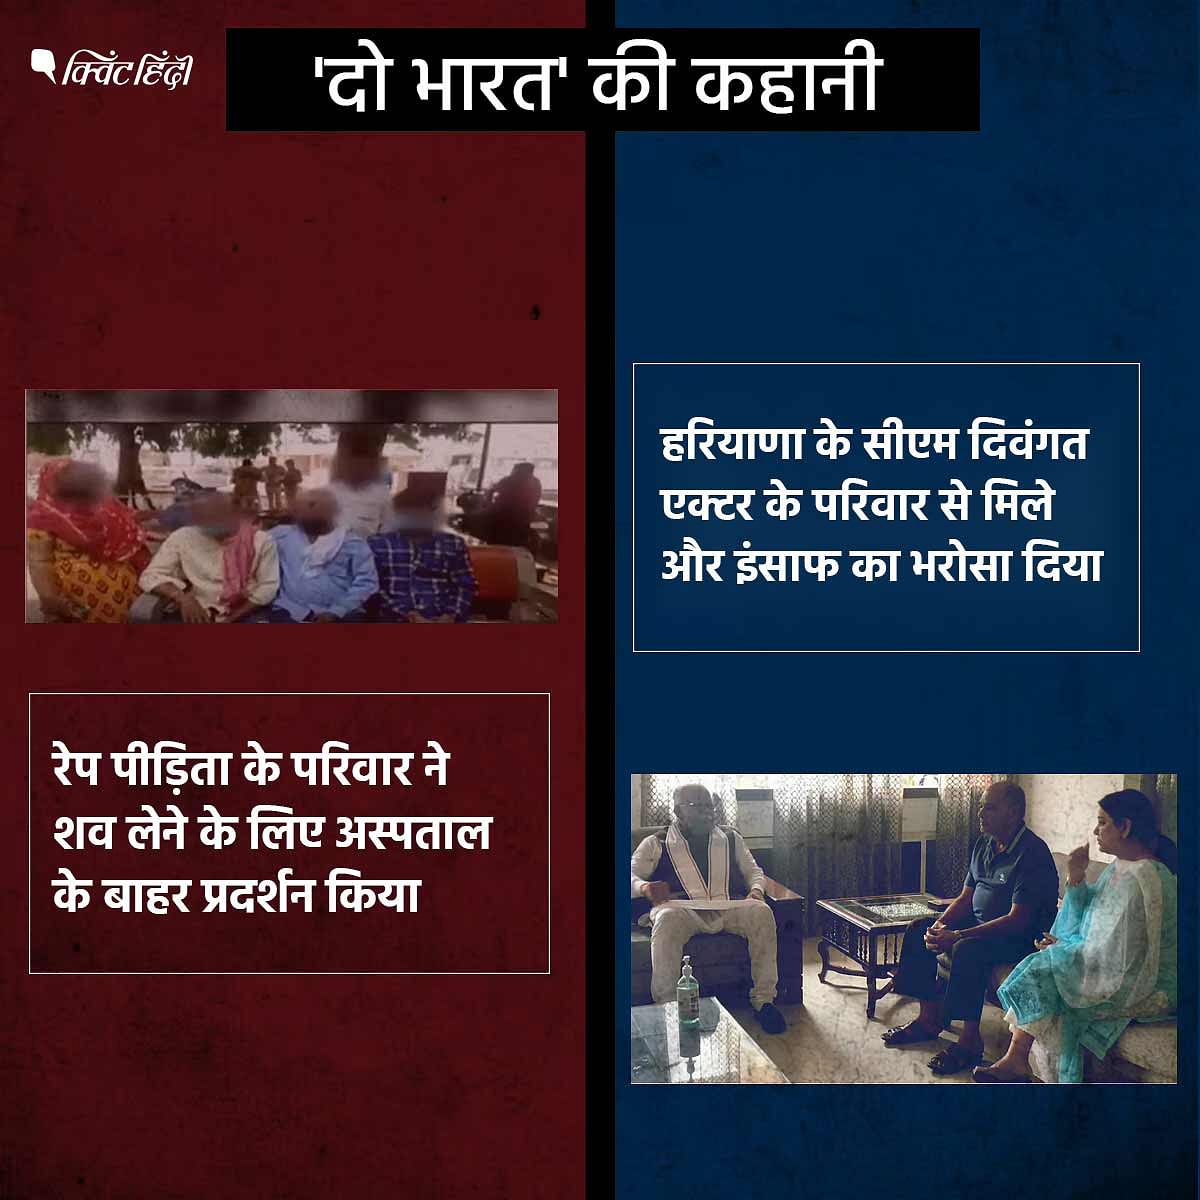 सुशांत सिंह राजपूत और हाथरस गैंगरेप की घटना को मीडिया ने कैसे कवर किया, इसे नजरअंदाज नहीं किया जा सकता.